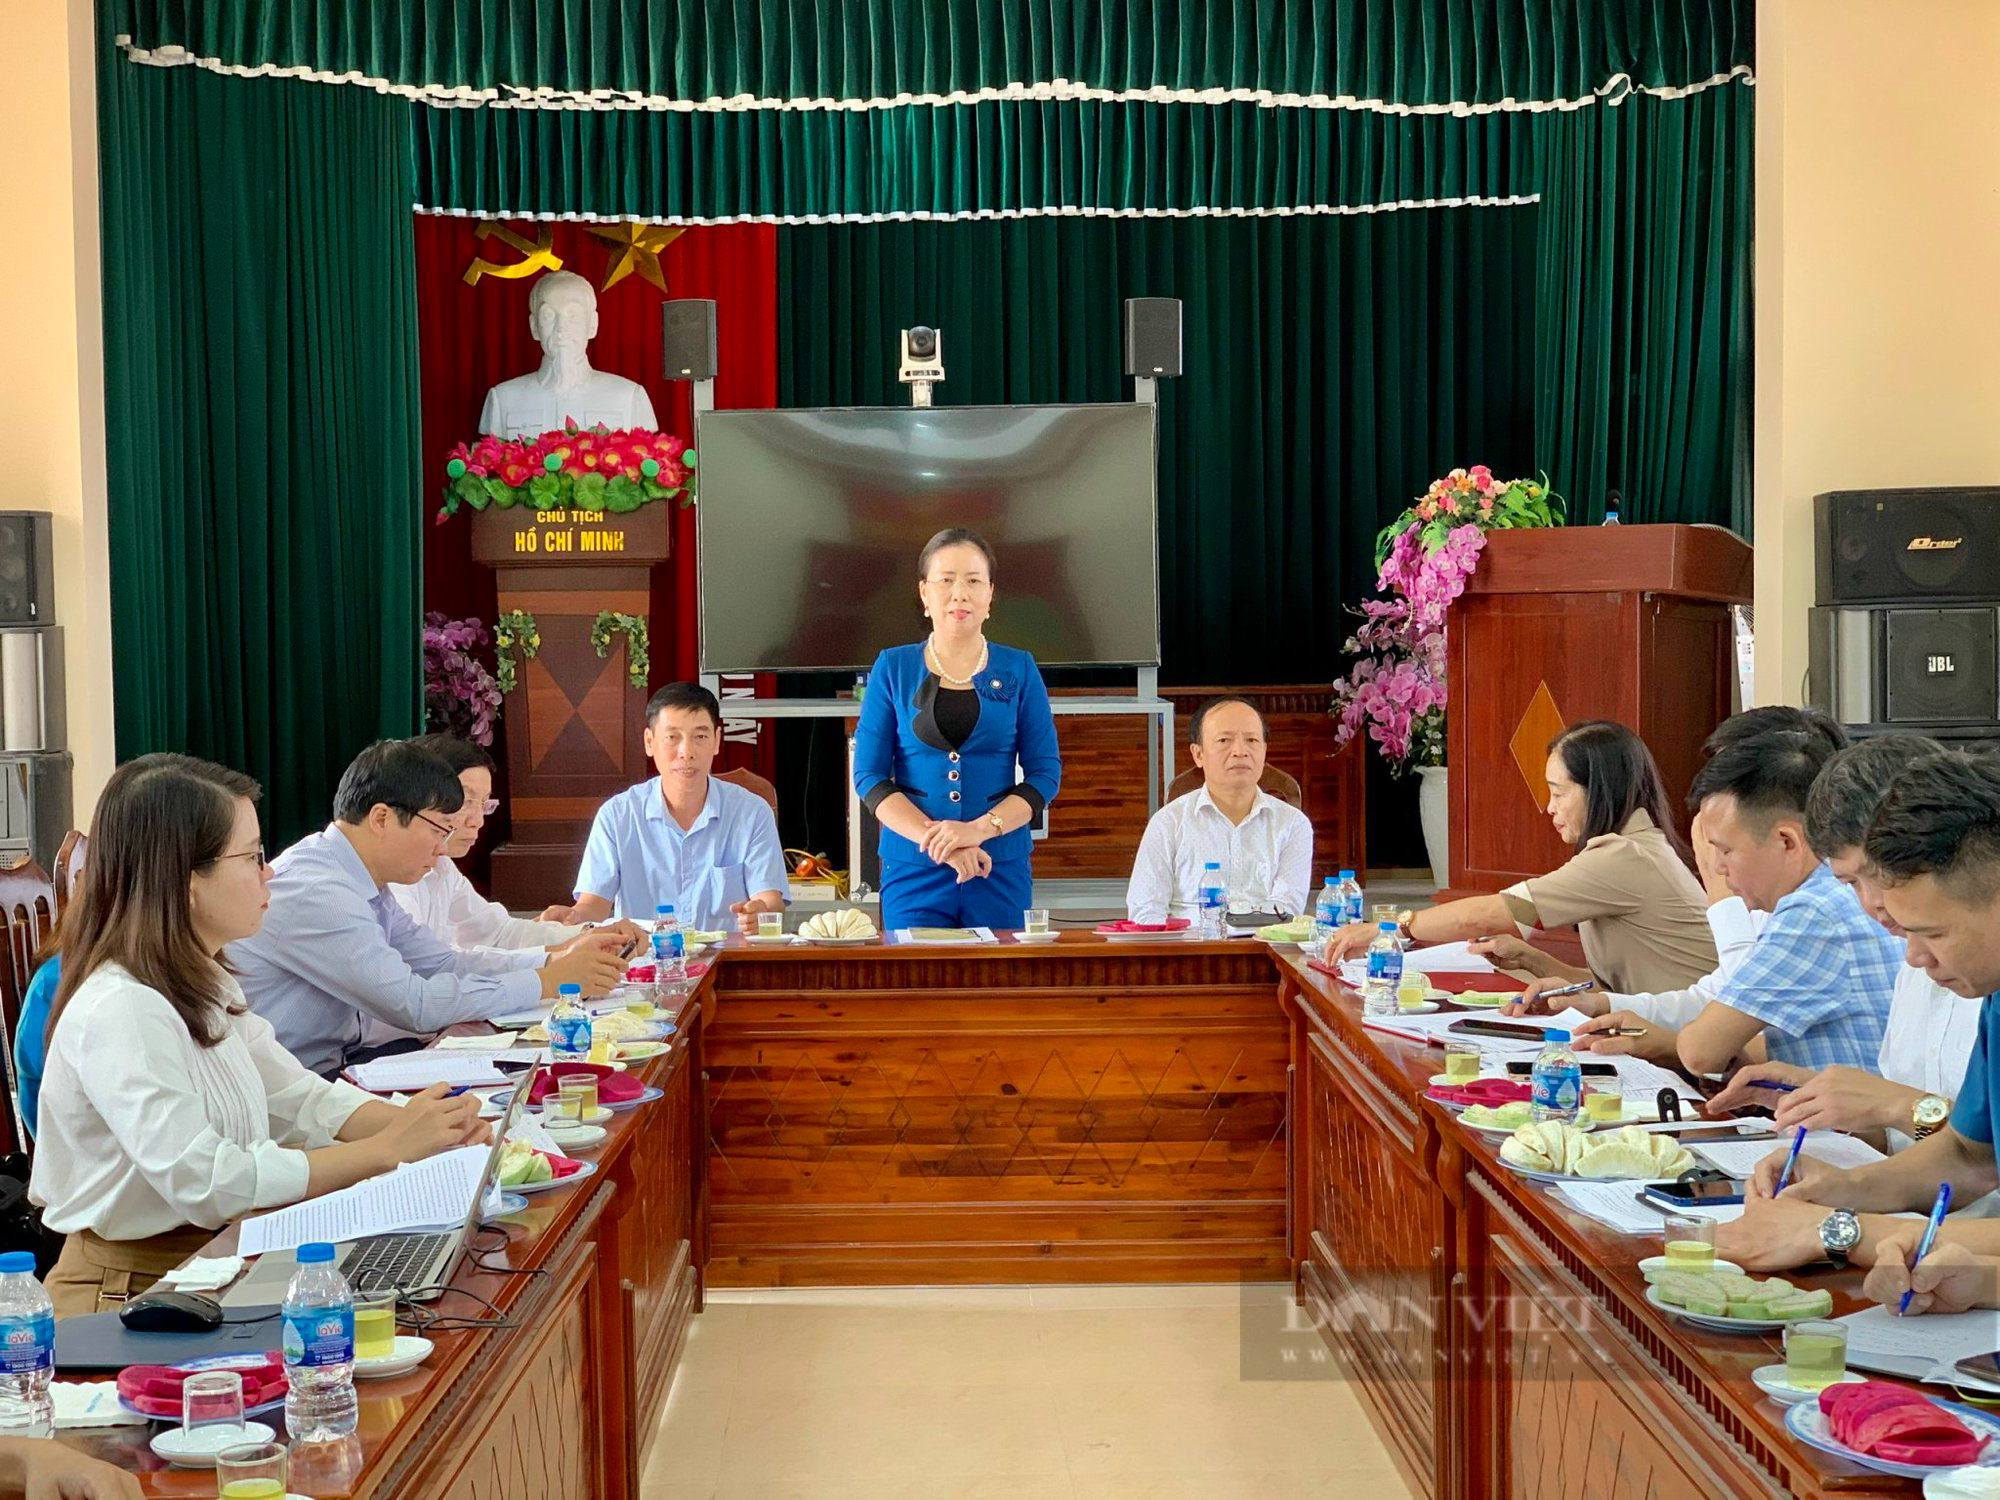 Phó Chủ tịch Hội NDVN Bùi Thị Thơm ấn tượng mô hình trồng nho công nghệ cao của nông dân Hà Nam - Ảnh 7.